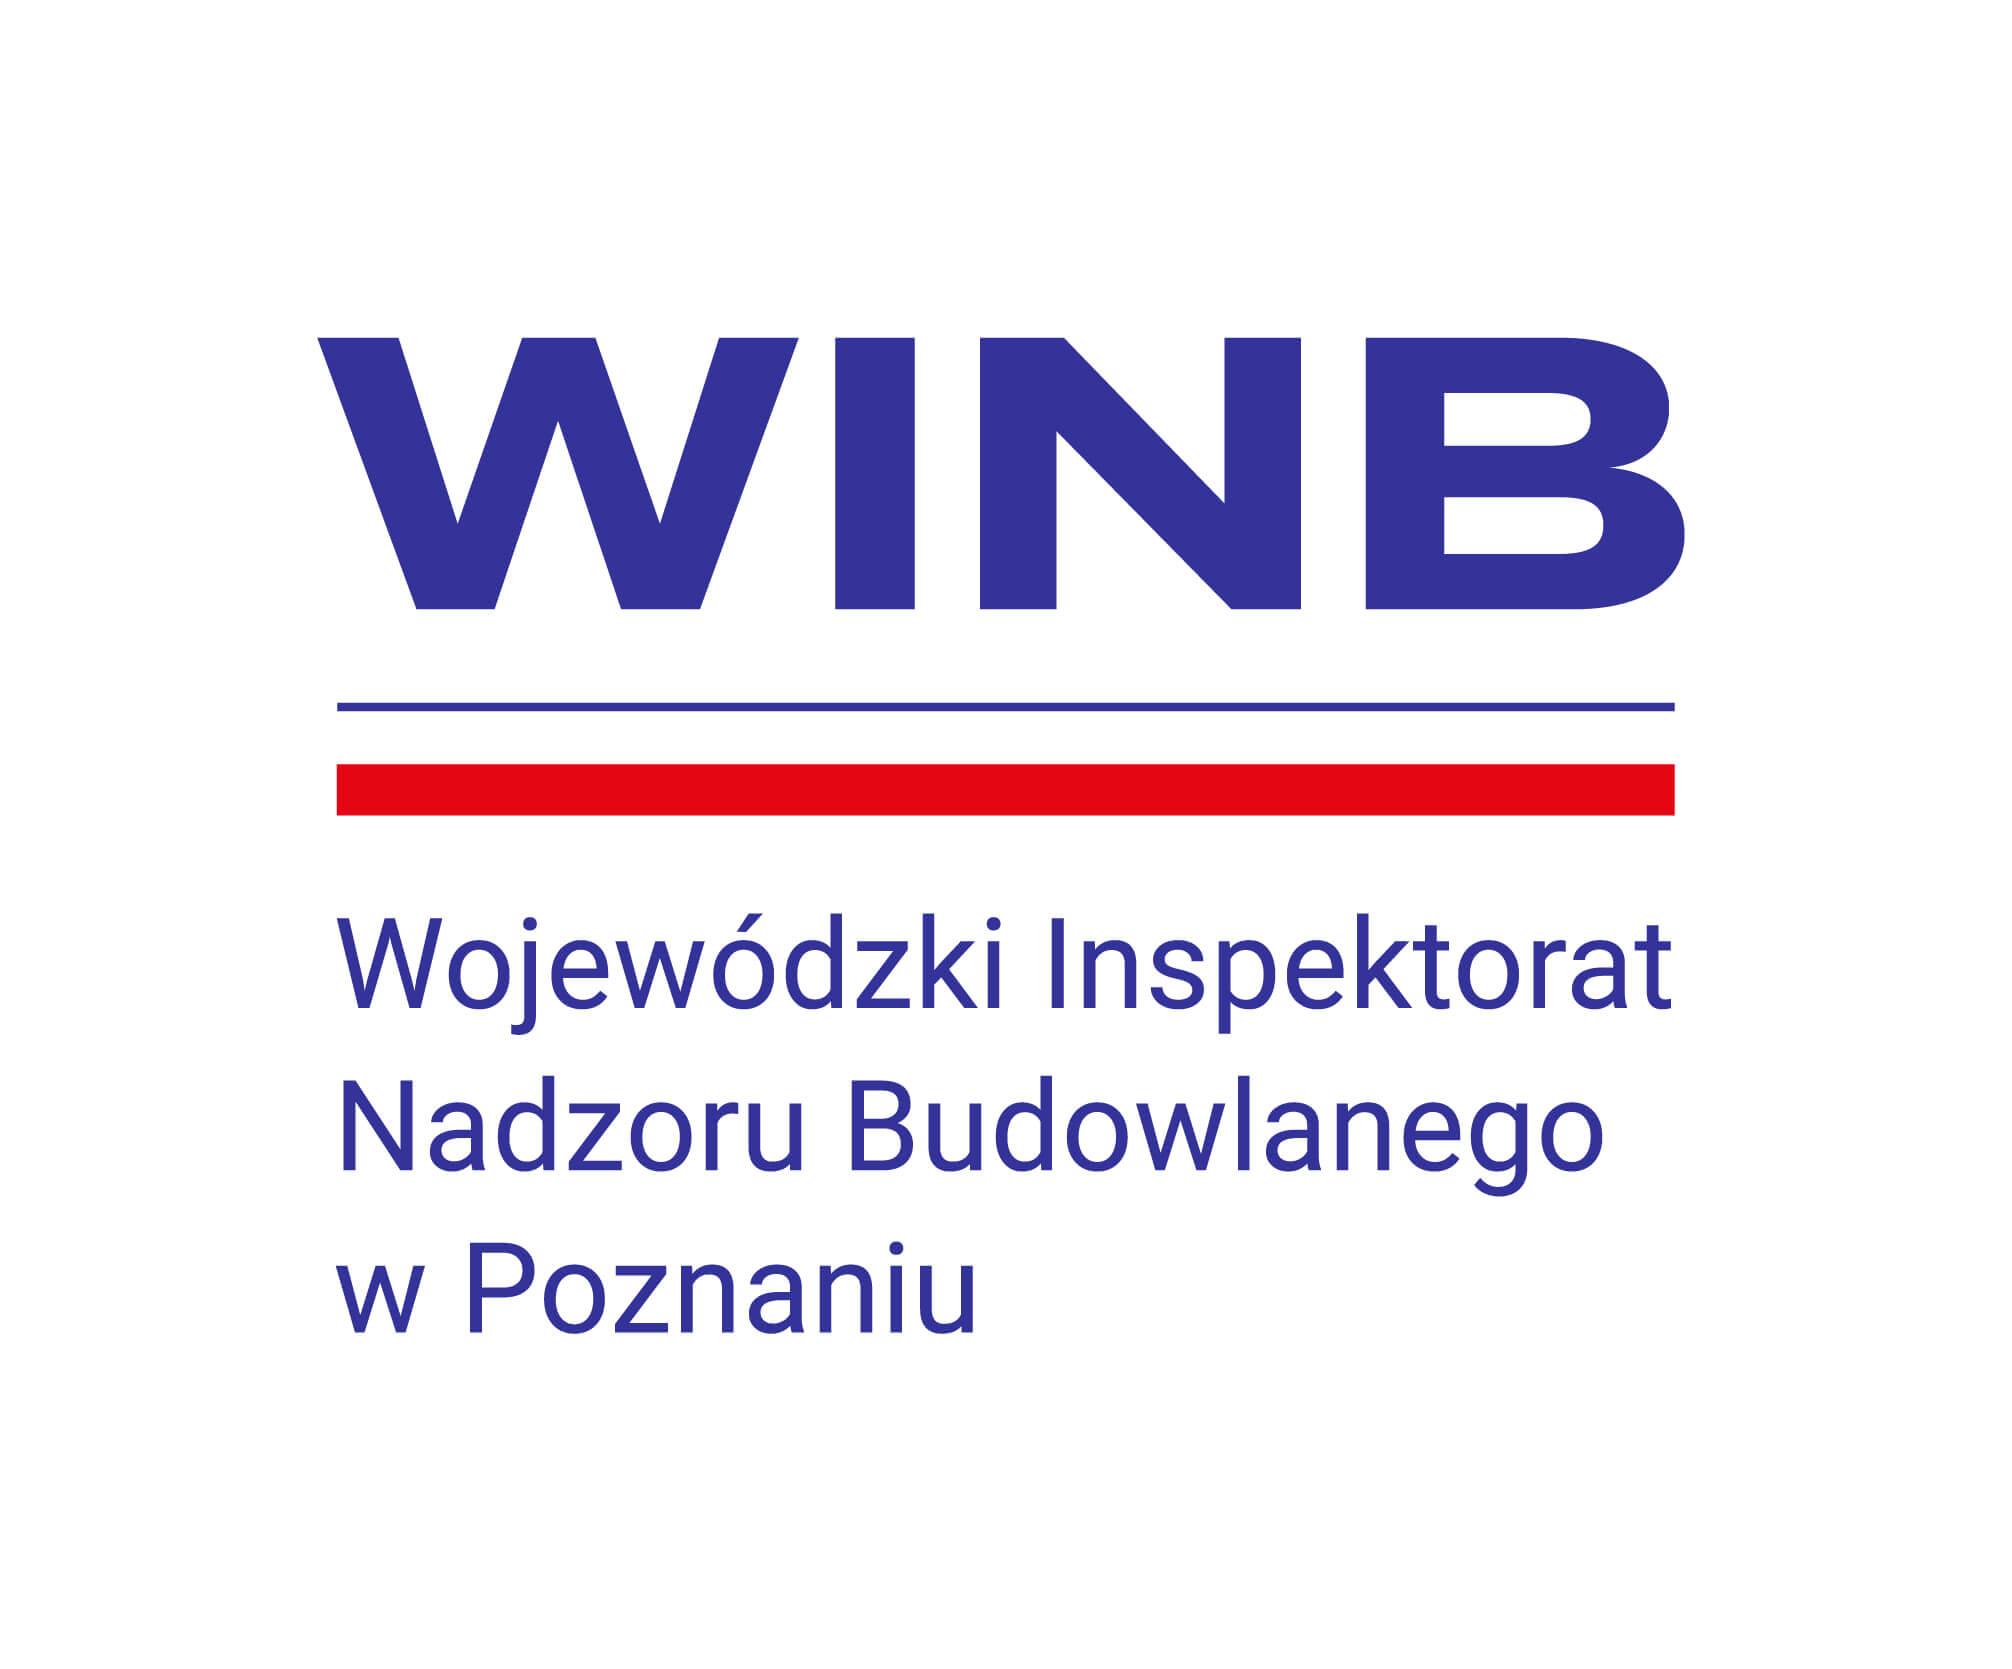 Wojewódzki Inspektorat Nadzoru Budowlanego w Poznaniu